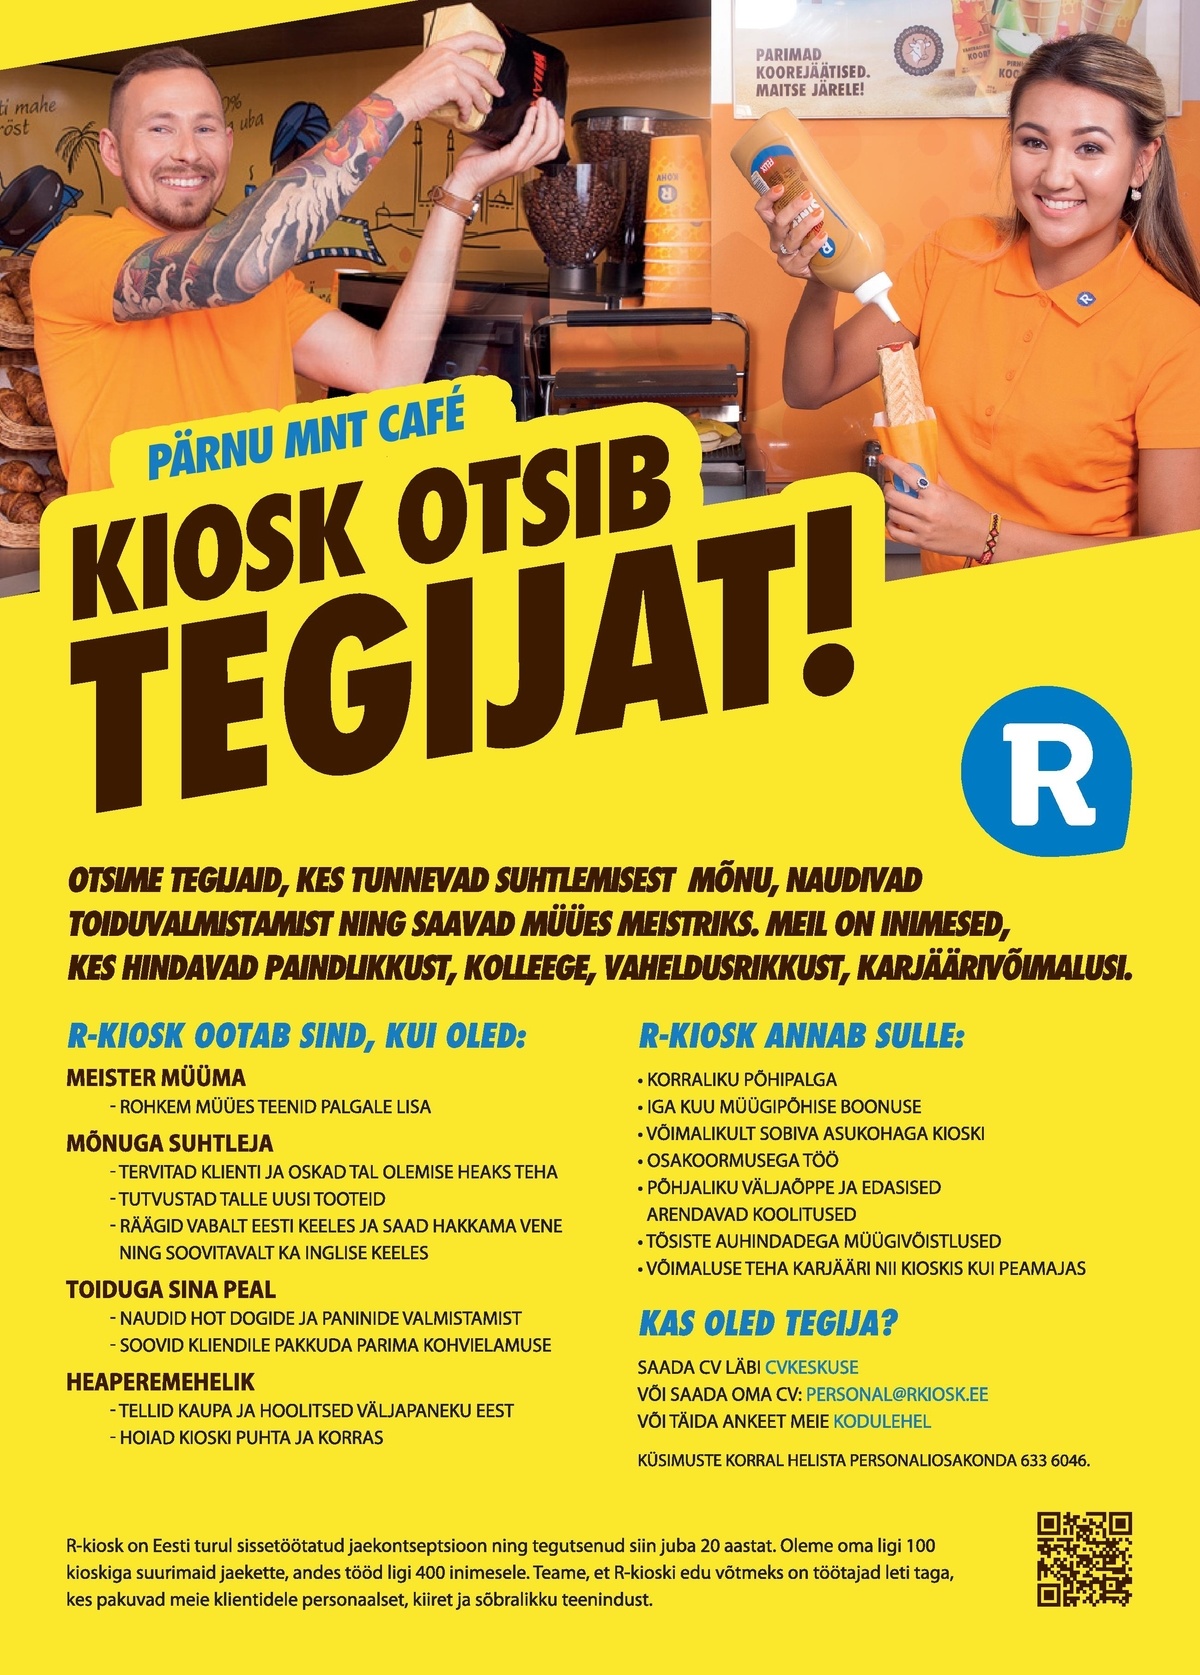 AS R-Kiosk Estonia Klienditeenindaja Pärnu mnt Cafe R-kioskisse Tallinnas